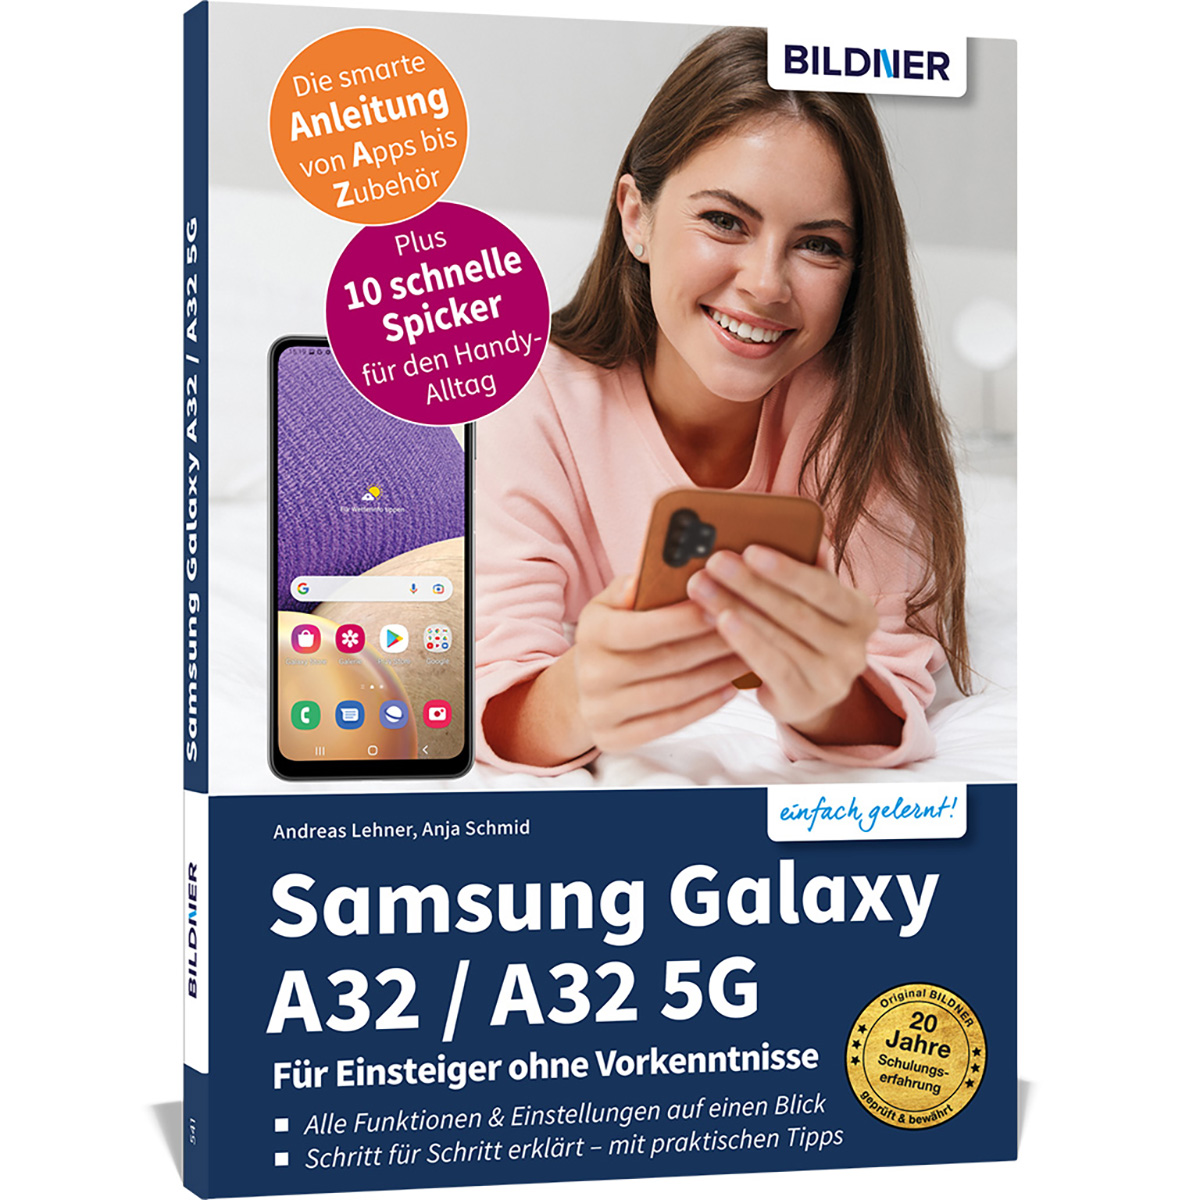 Samsung Galaxy A32 Vorkenntnisse / 5G - ohne A32 Für Einsteiger